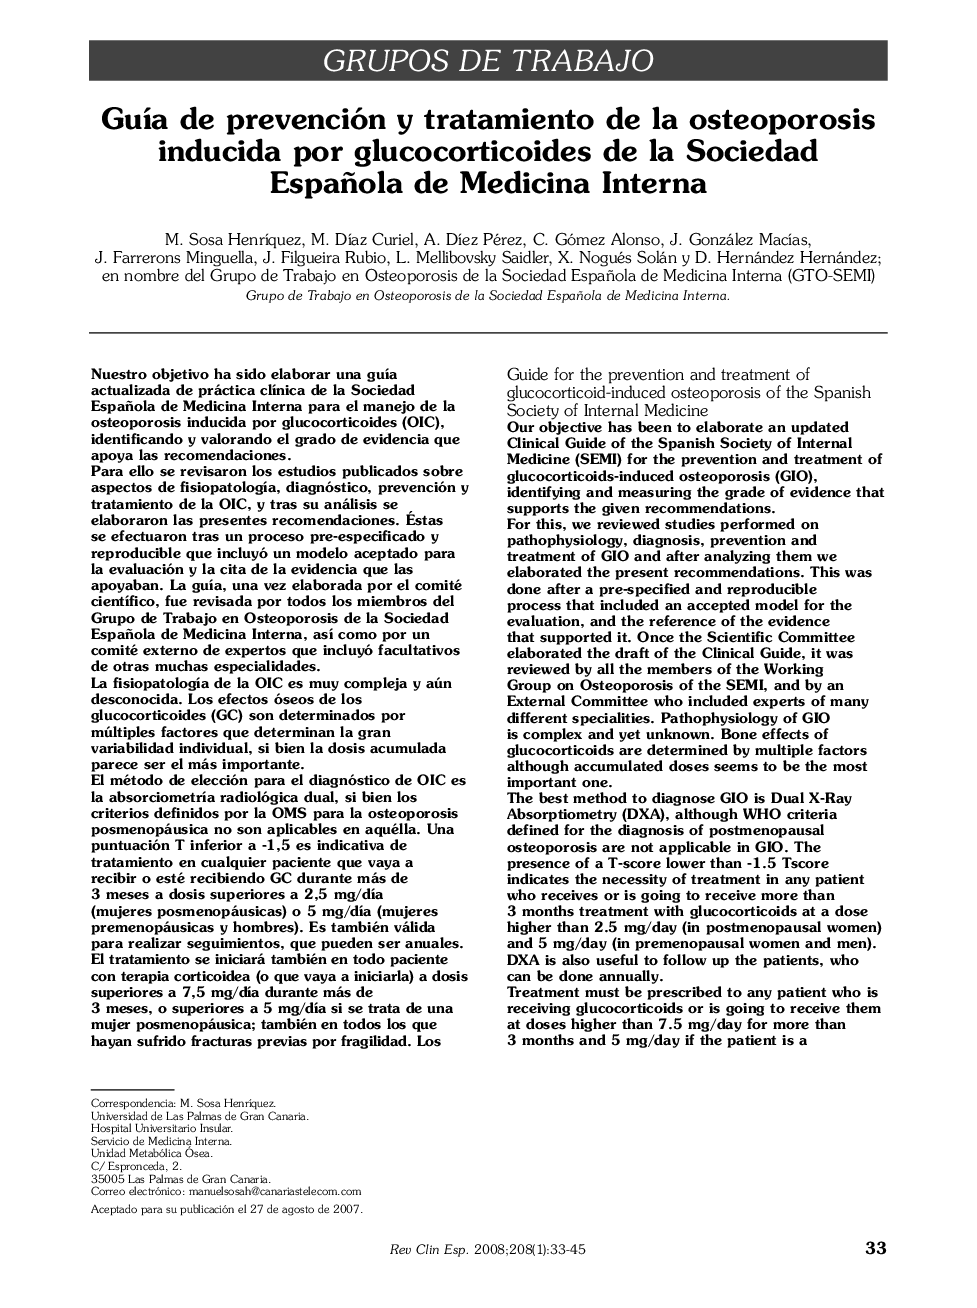 Guía de prevención y tratamiento de la osteoporosis inducida por glucocorticoides de la Sociedad Española de Medicina Interna